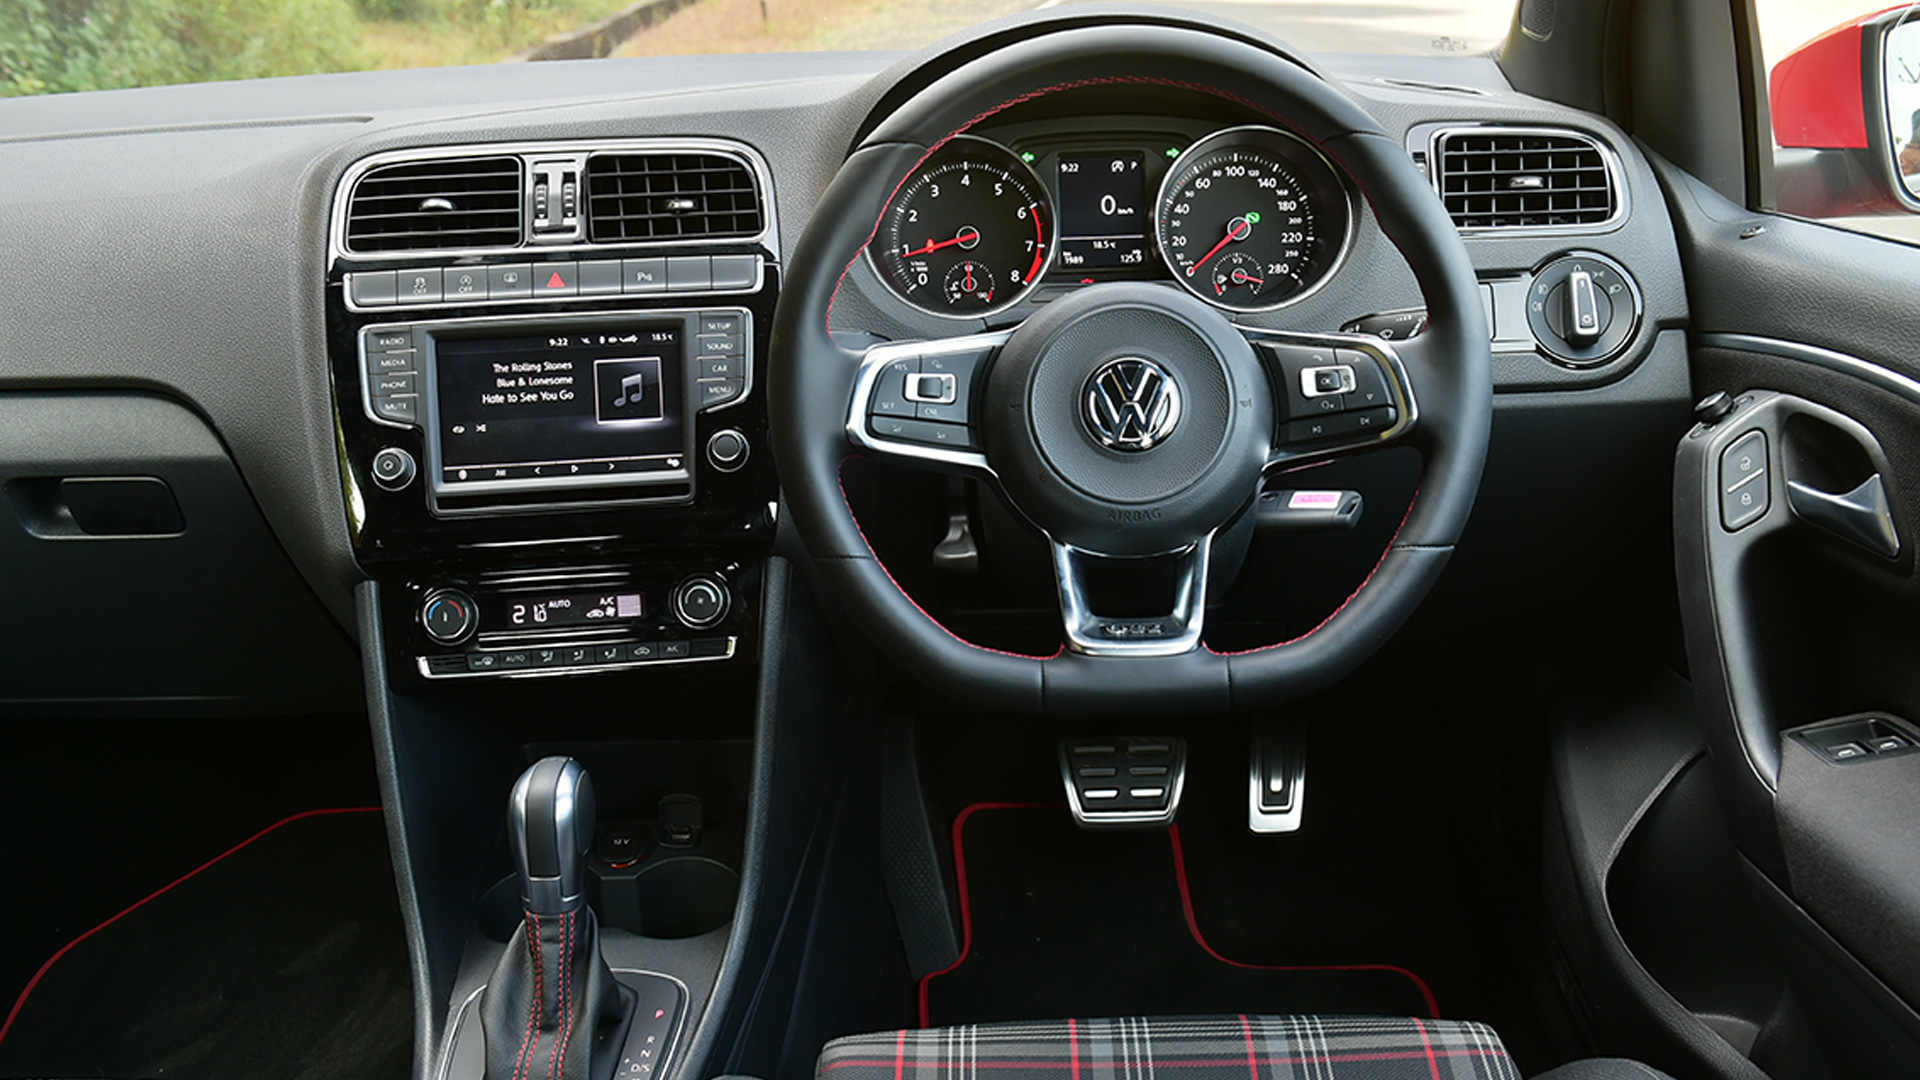 Volkswagen Polo 2017 Gti Interior Car Photos Overdrive